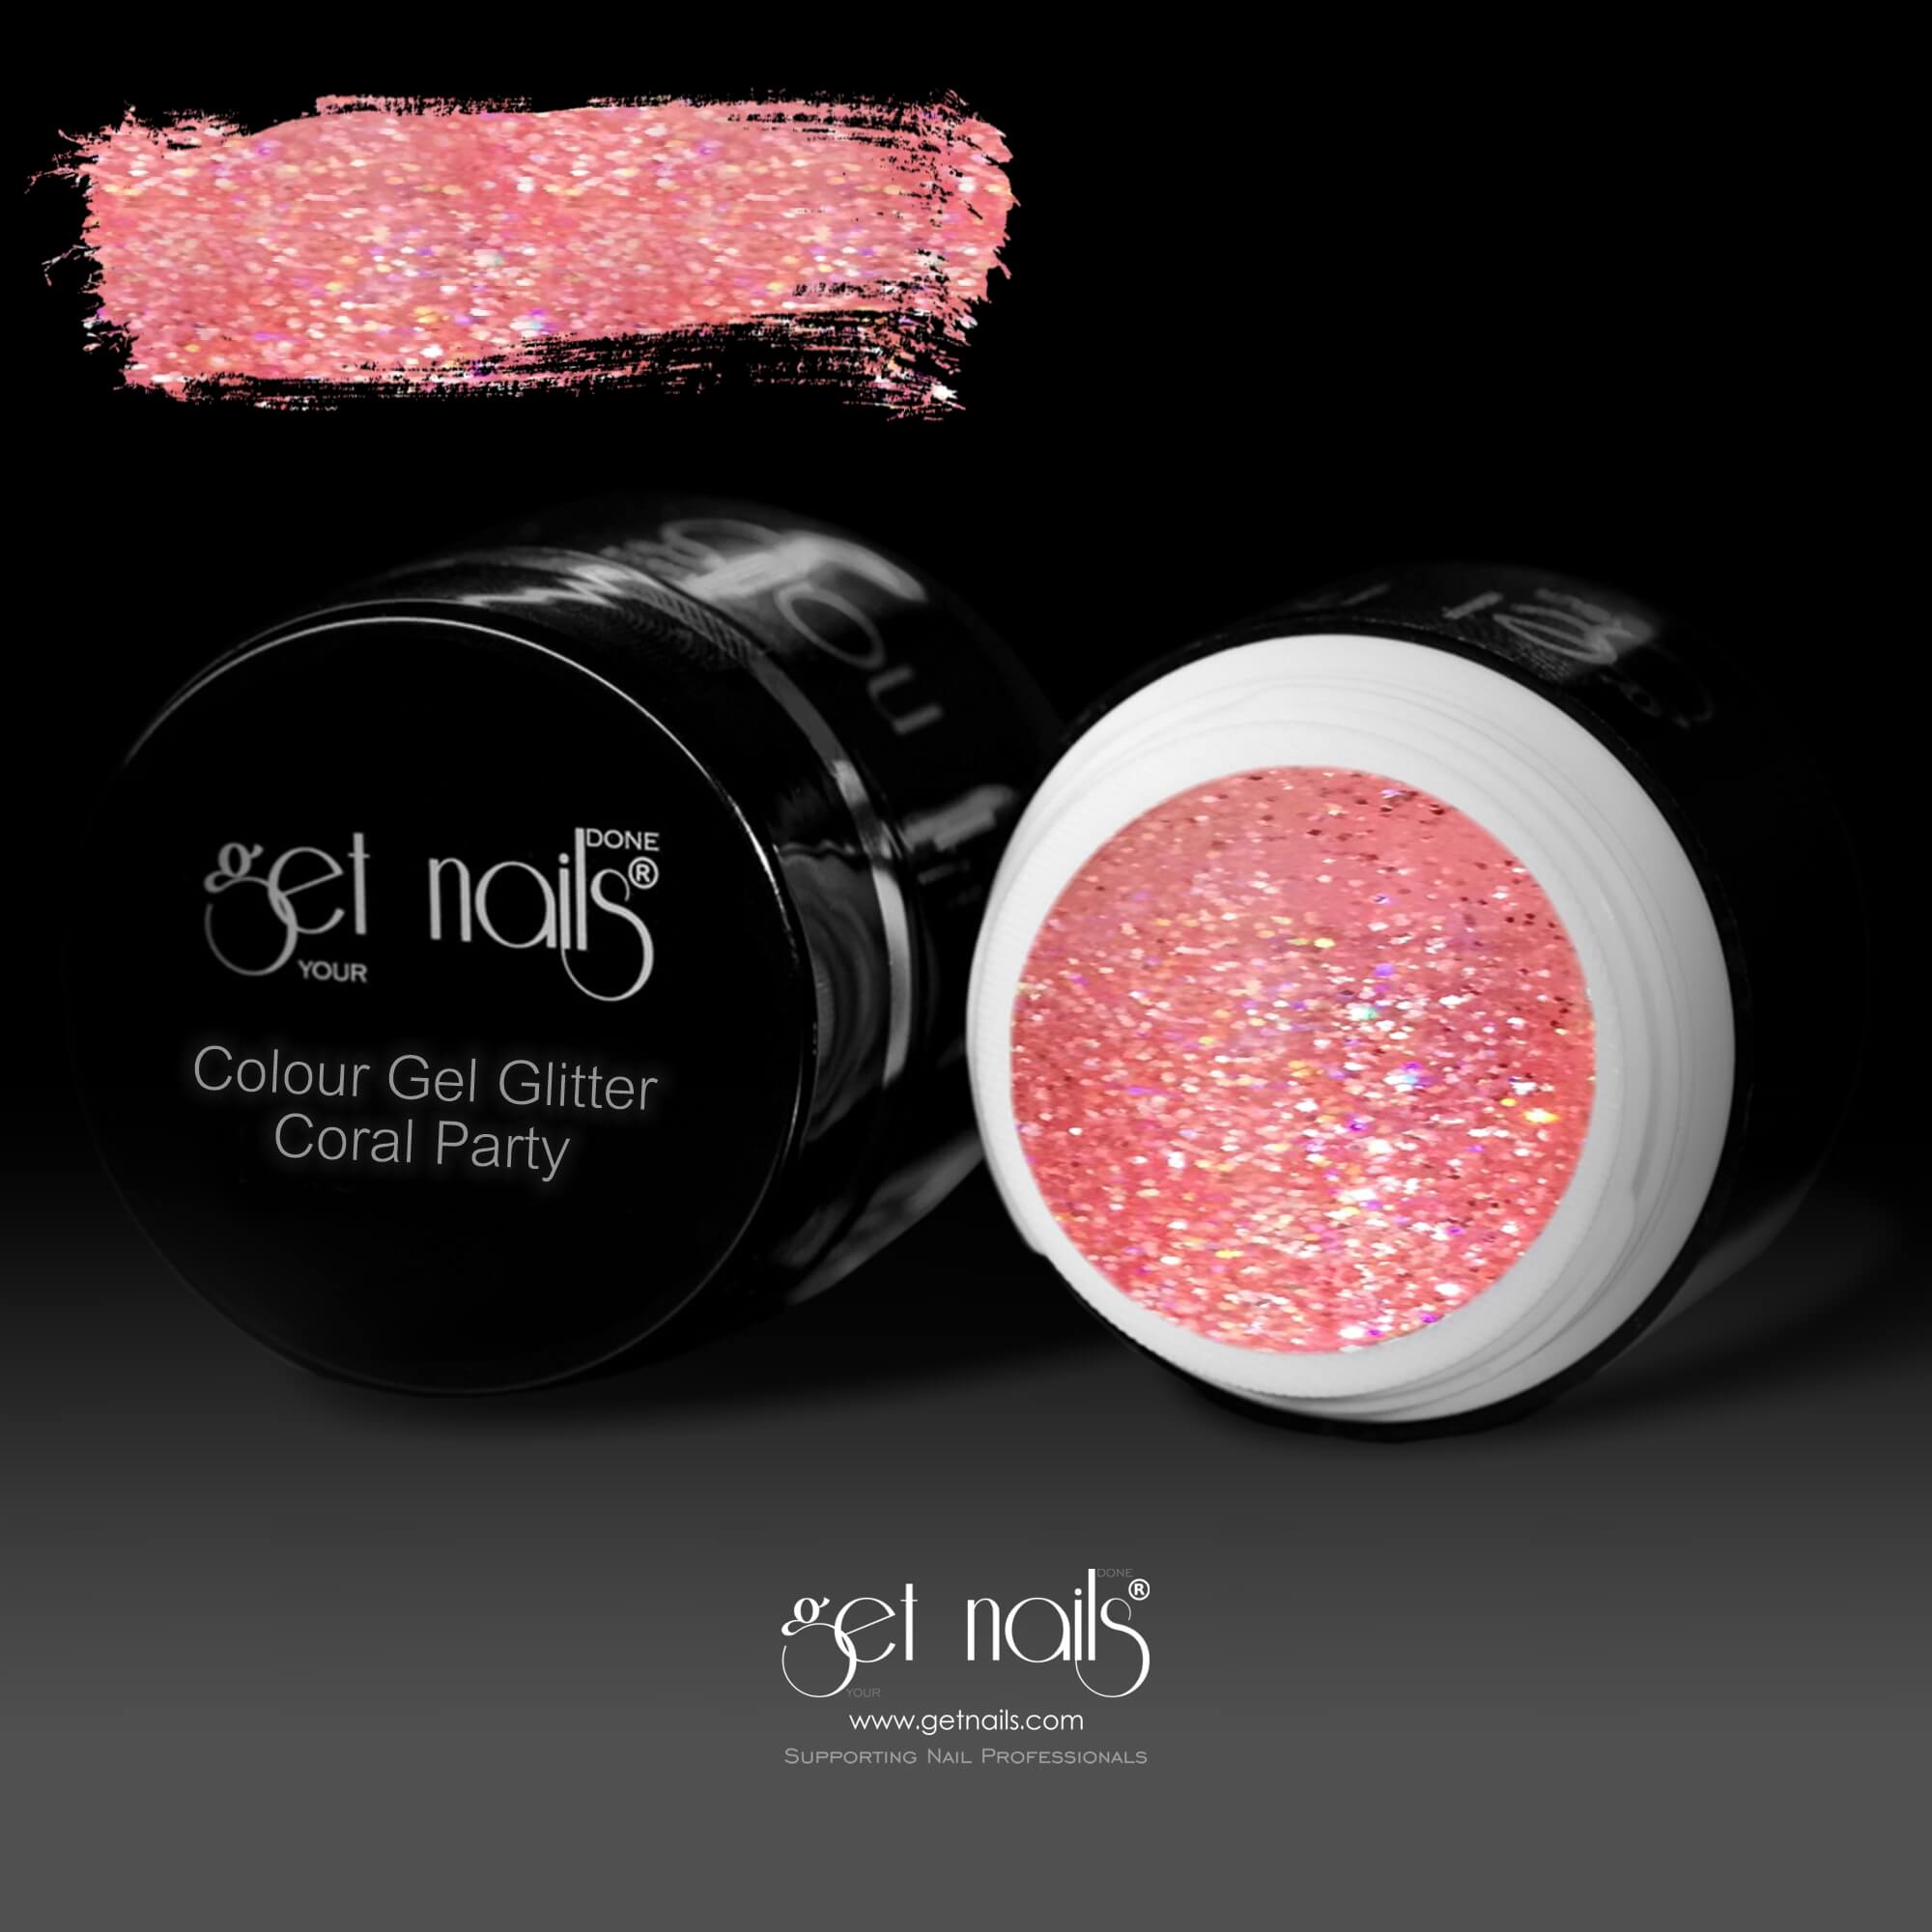 Get Nails Austria - Colour Gel Glitter Coral Party 5g